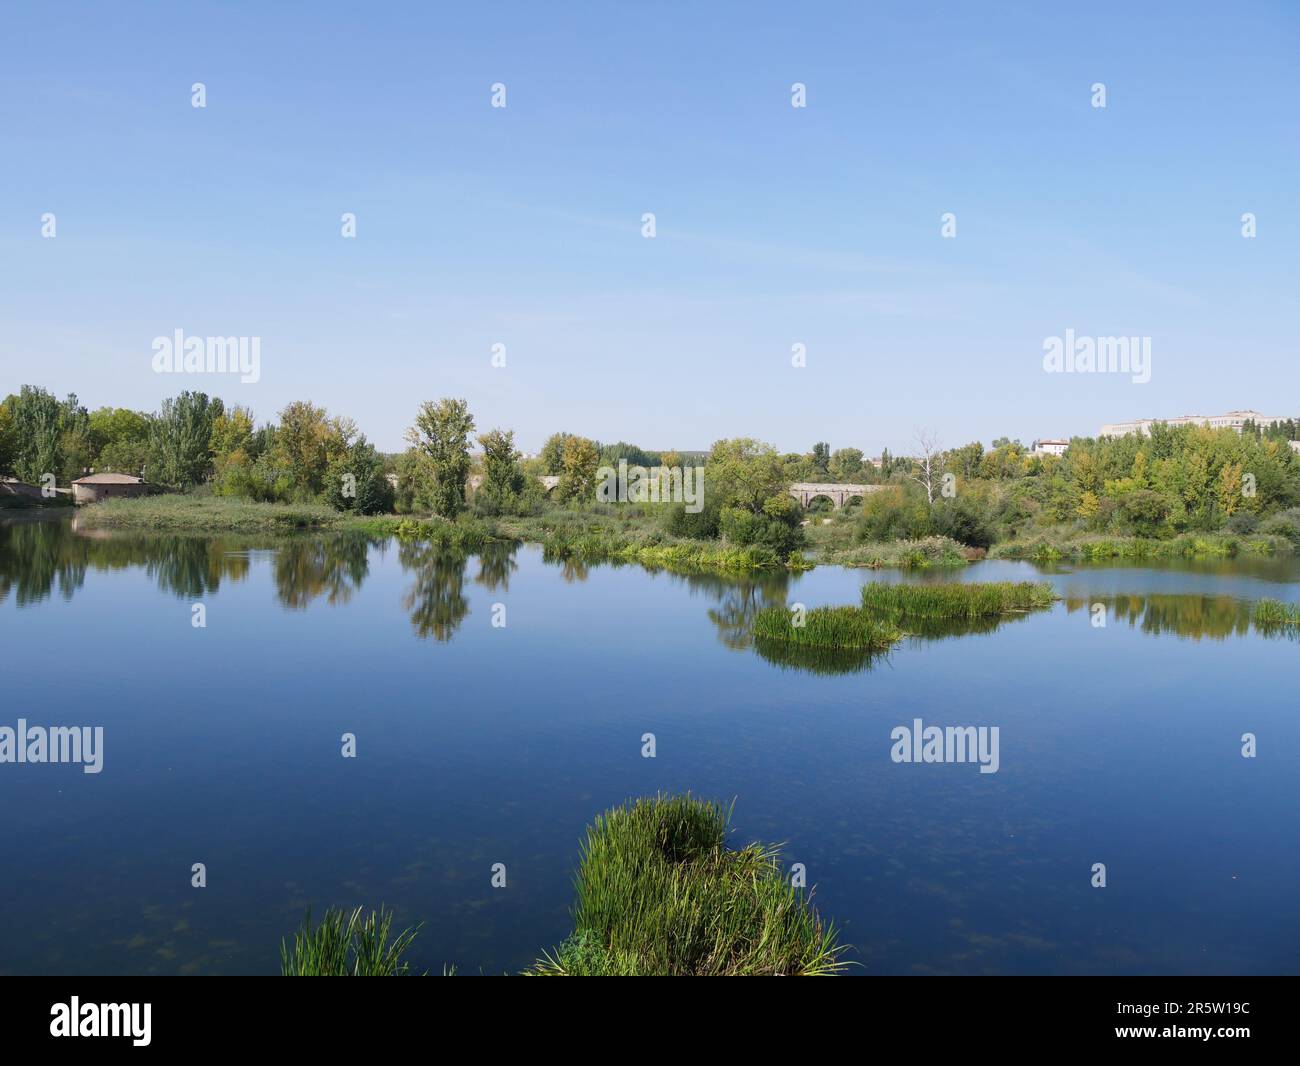 Blick auf den Fluss Tormes, der durch die Stadt Salamanca an einem Tag mit blauem Himmel fließt. Sie können die verschiedenen Arten von Pflanzen und Vegetation sehen. Stockfoto